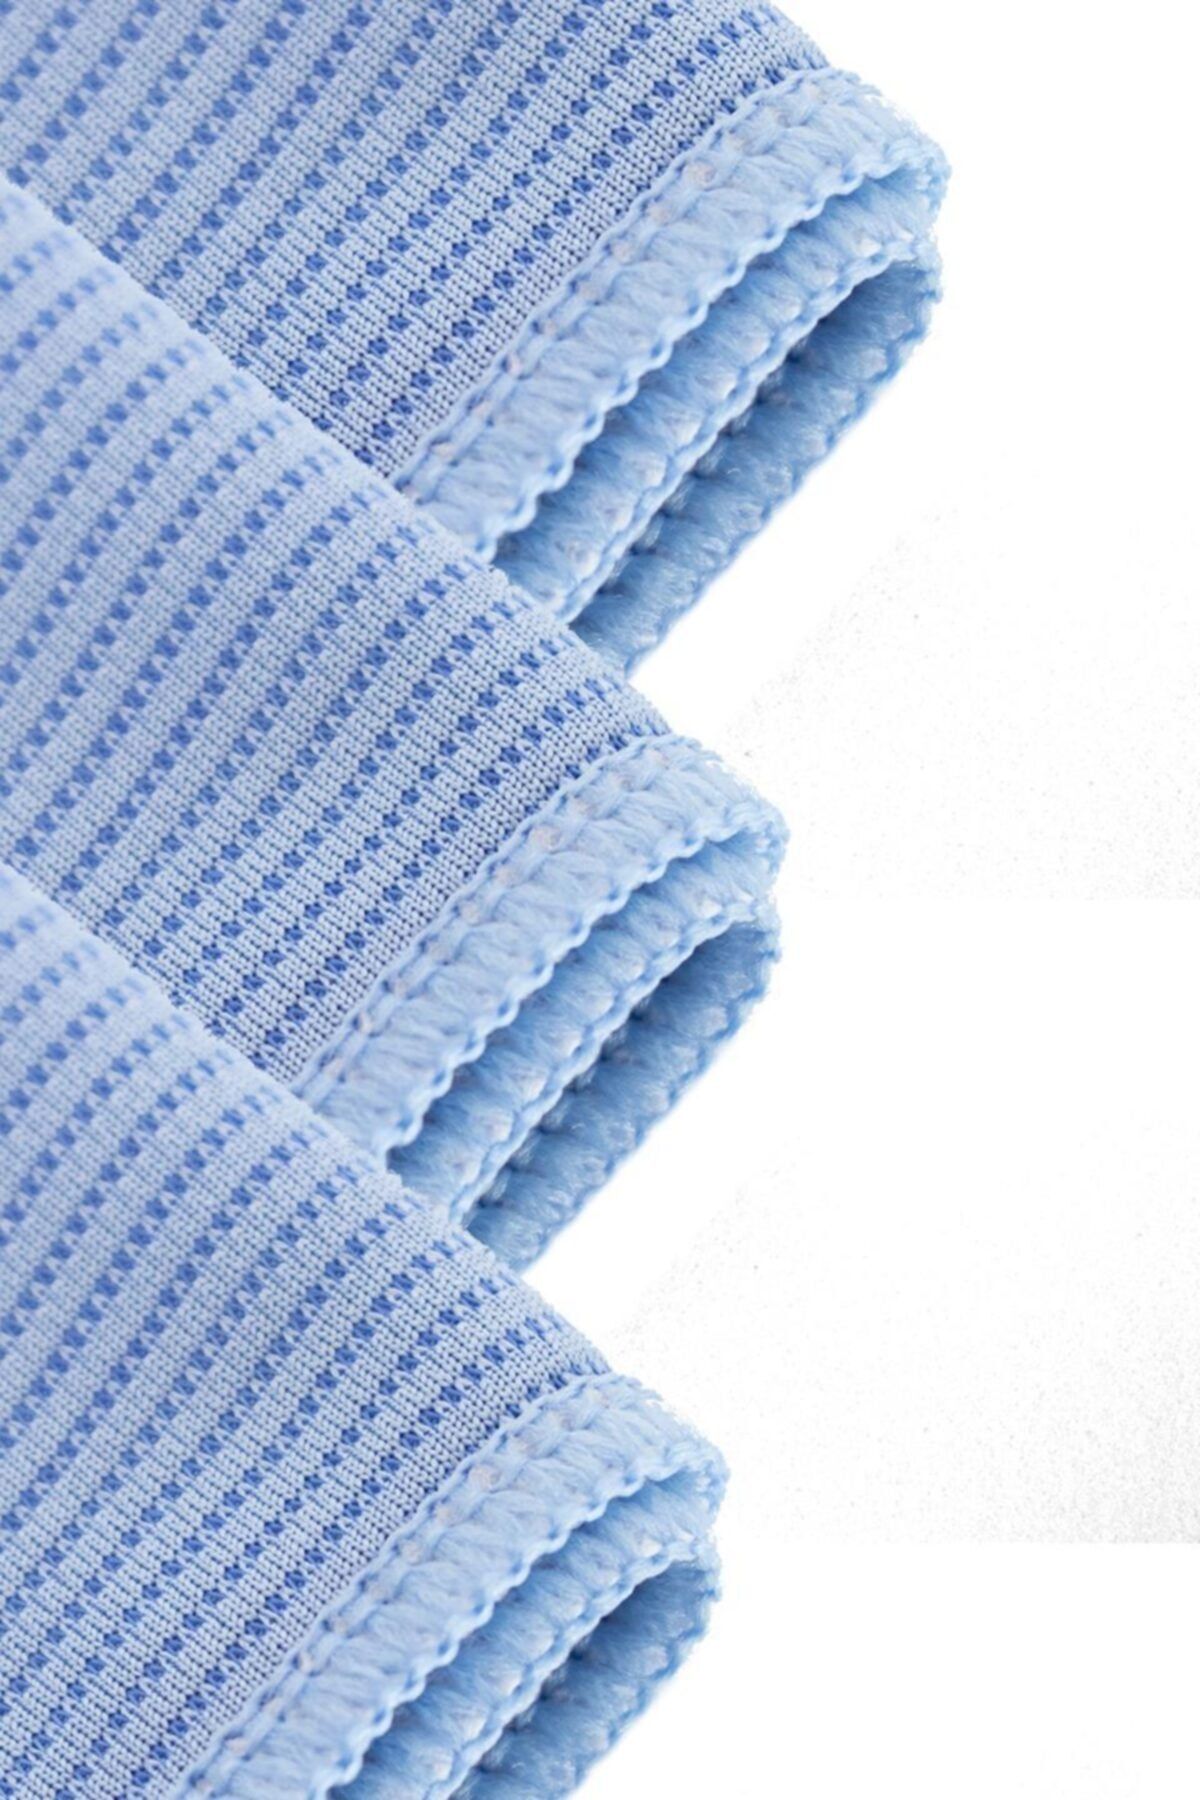 SİLVER HOME Mikrofiber 40x40cm 3lü Zor Kir Ve Yağ Temizlik Bezi - Mavi